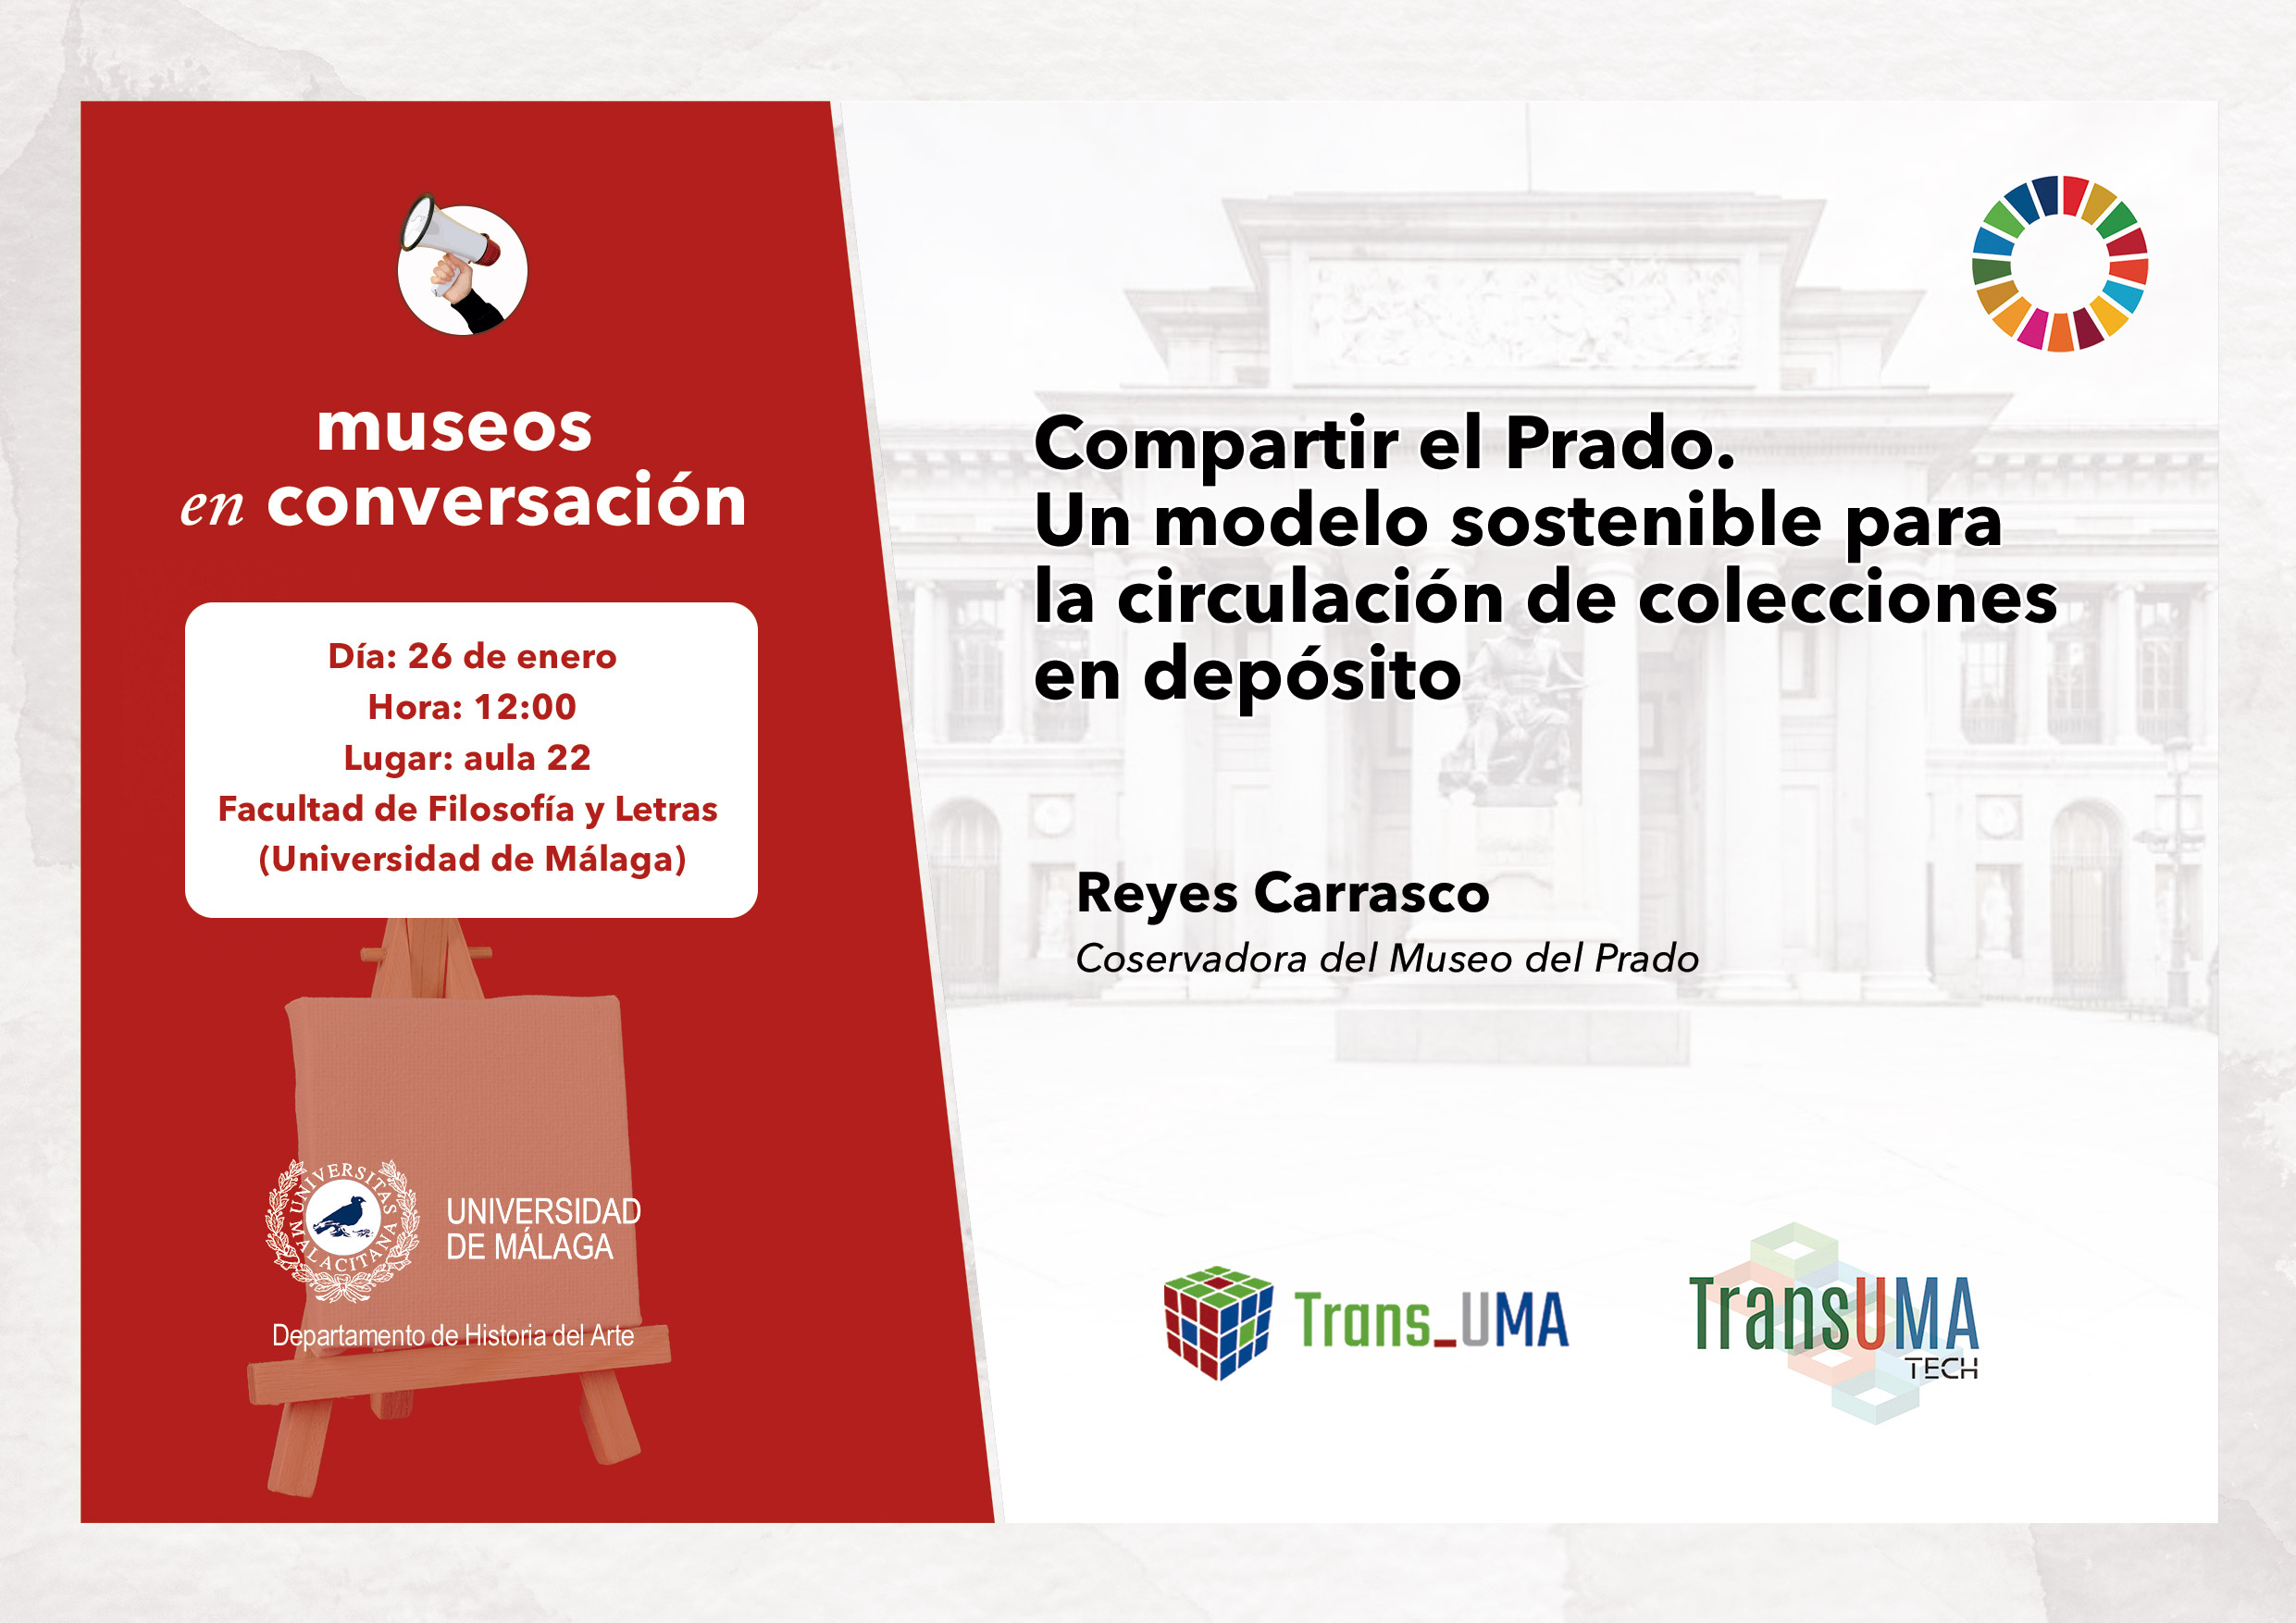 Compartir el Prado. Un modelo sostenible para la circulación de colecciones en depósito